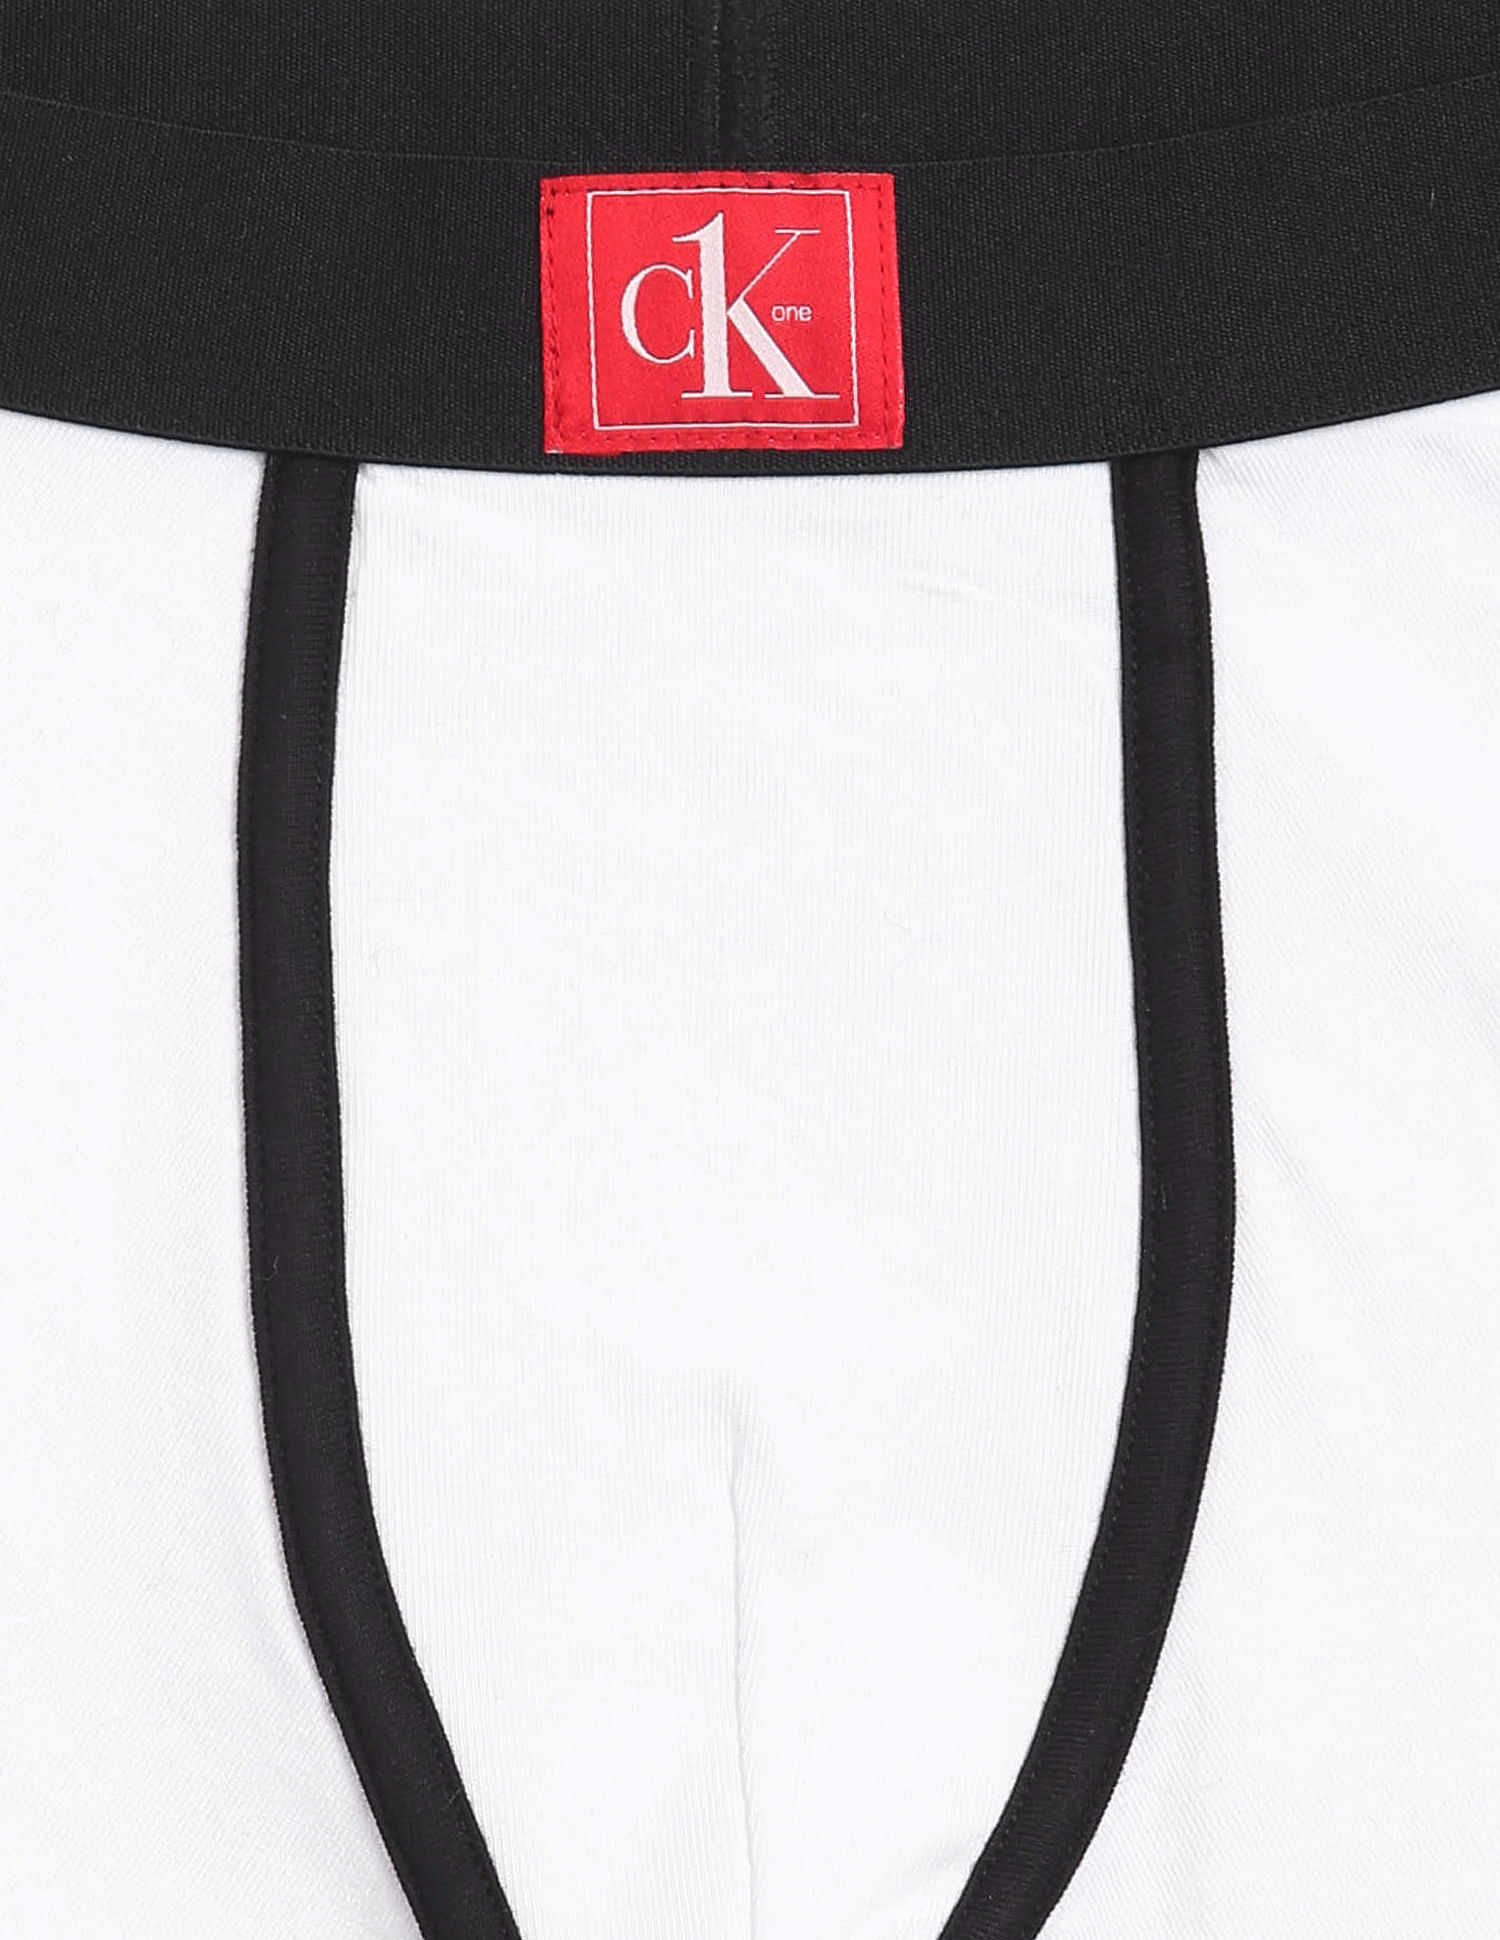 Calvin Klein Boys' Little Ck Cotton Assorted Boxer Briefs Underwear, 2 Pack